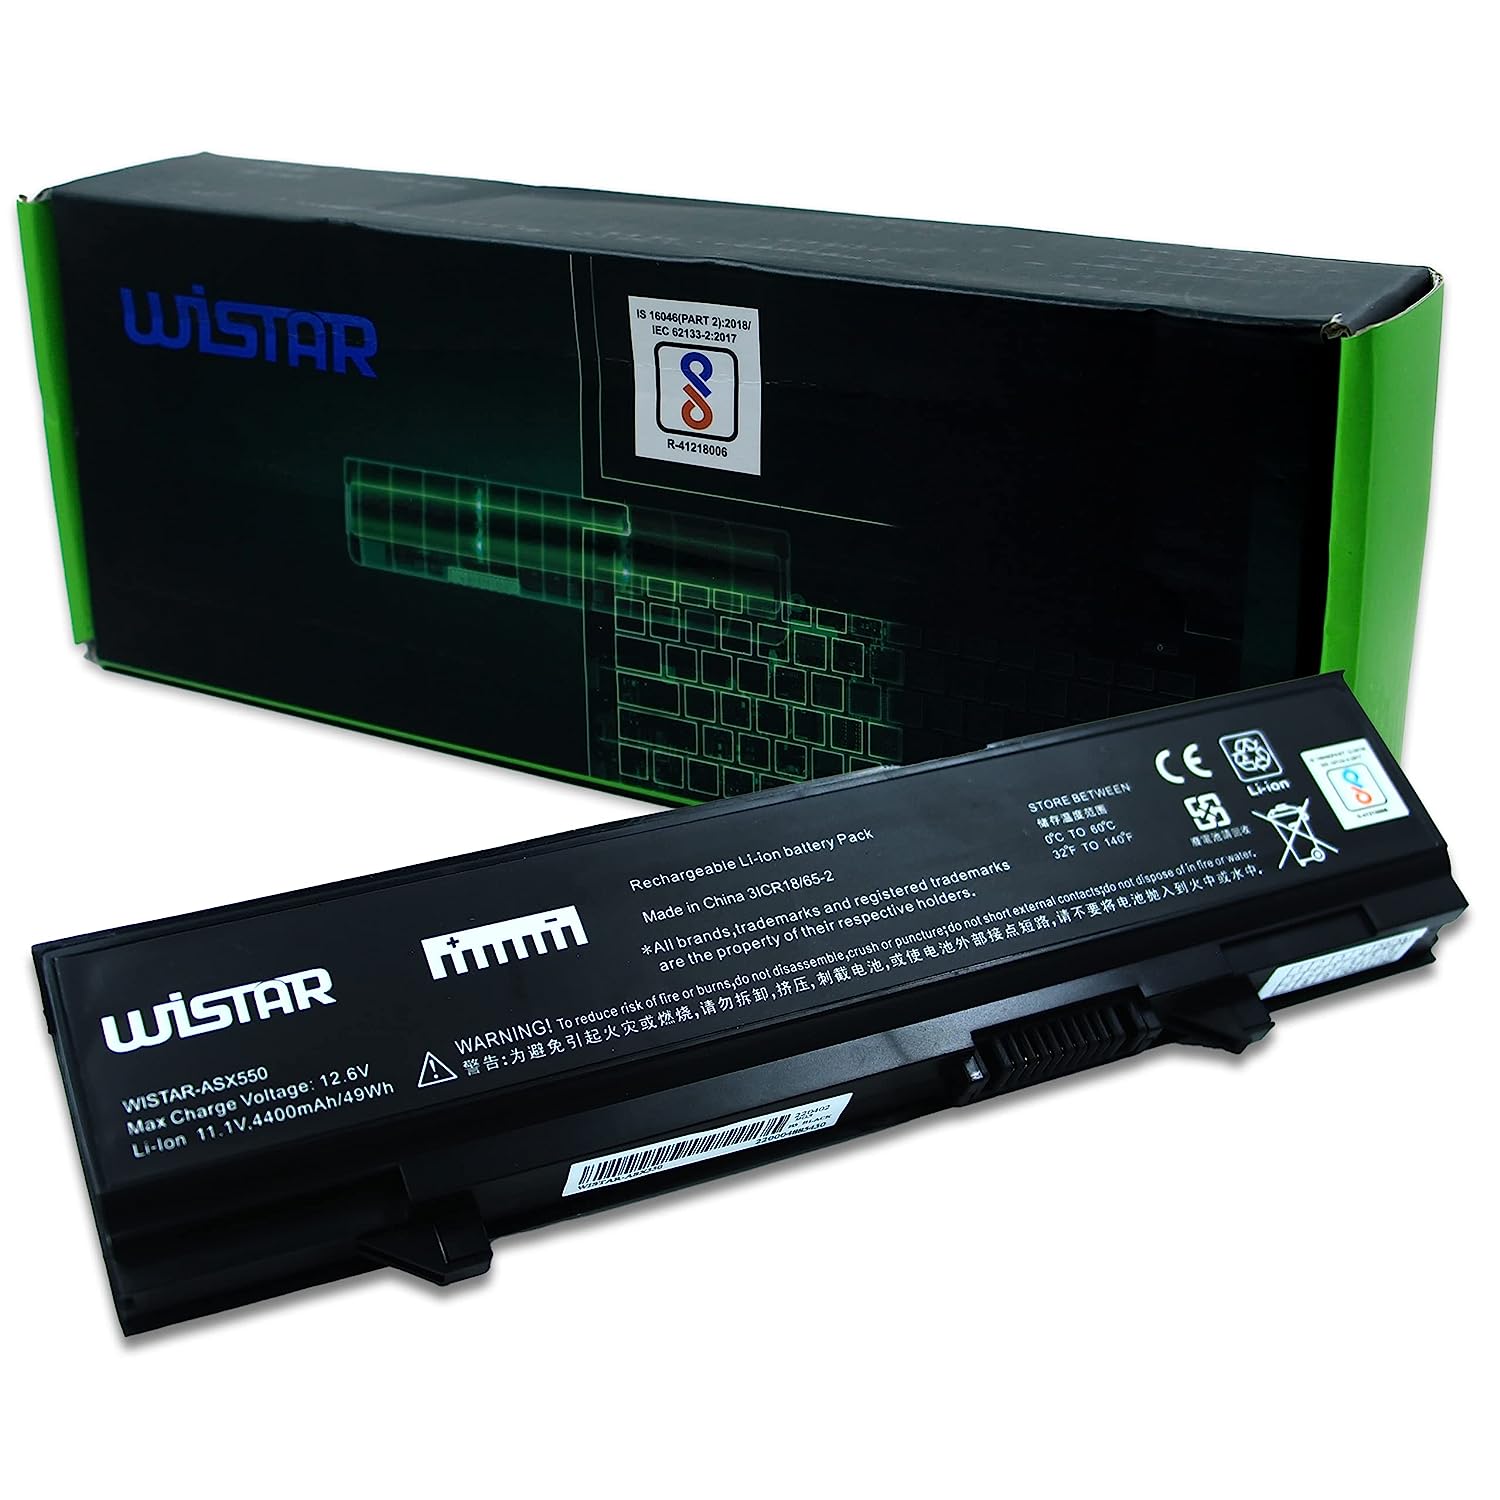 WISTAR RM656 RM661 RM668 PW640 Laptop Battery for Dell Latitude E5400 U116D W071D X064D P858D Battery